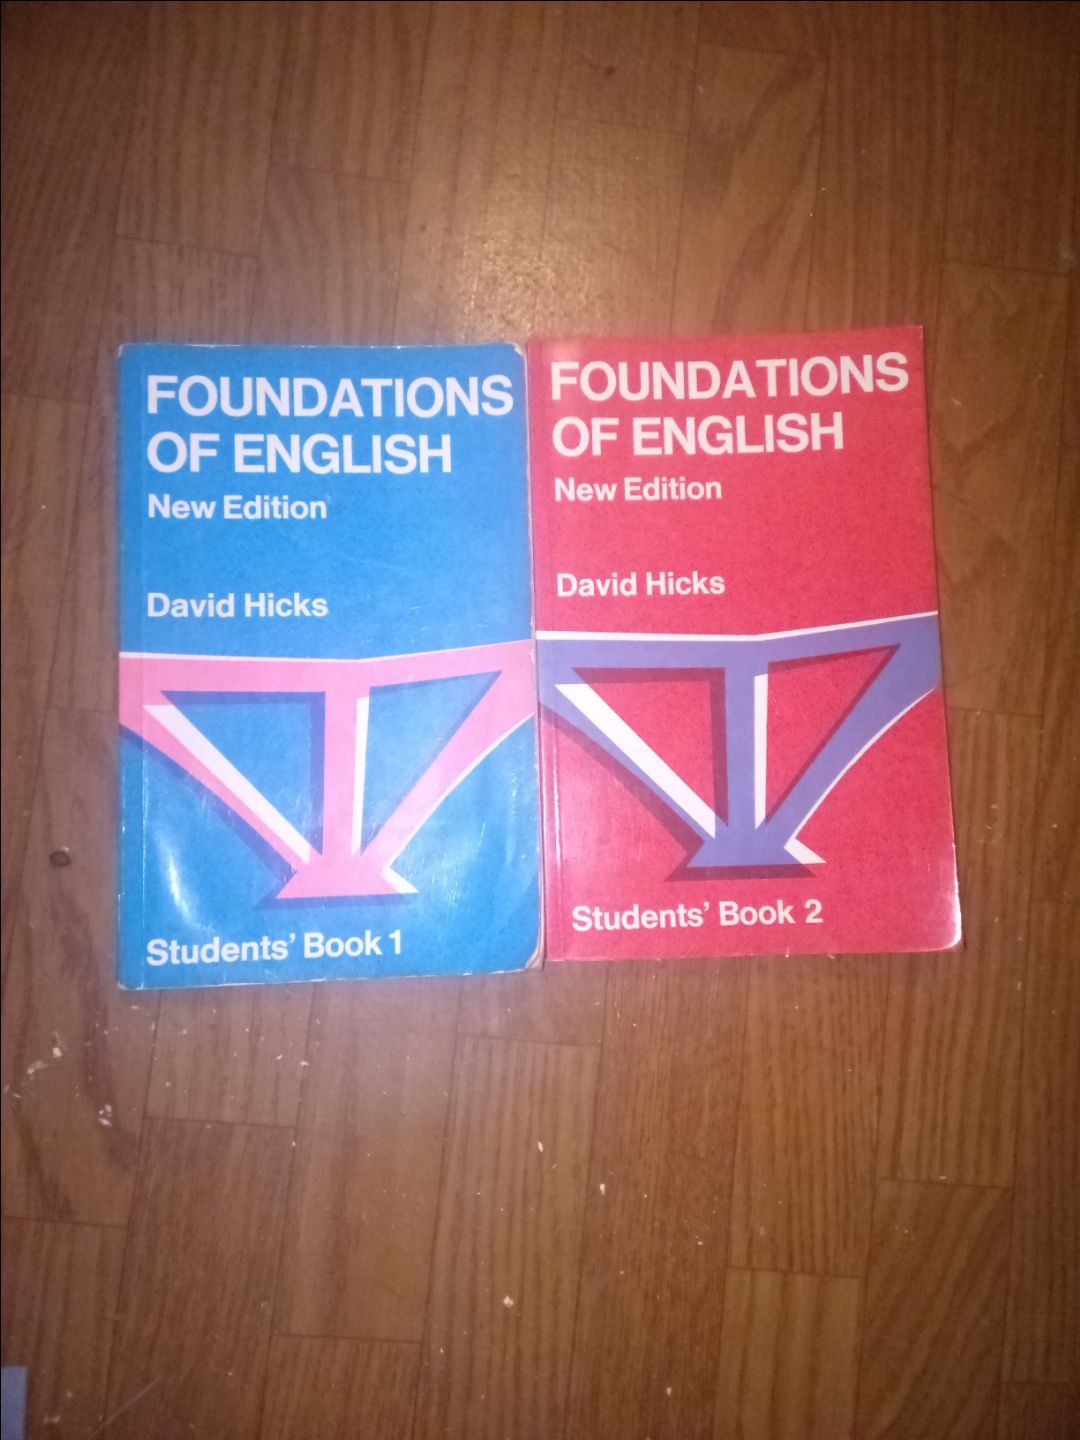 Oddam 2 książki angielskie